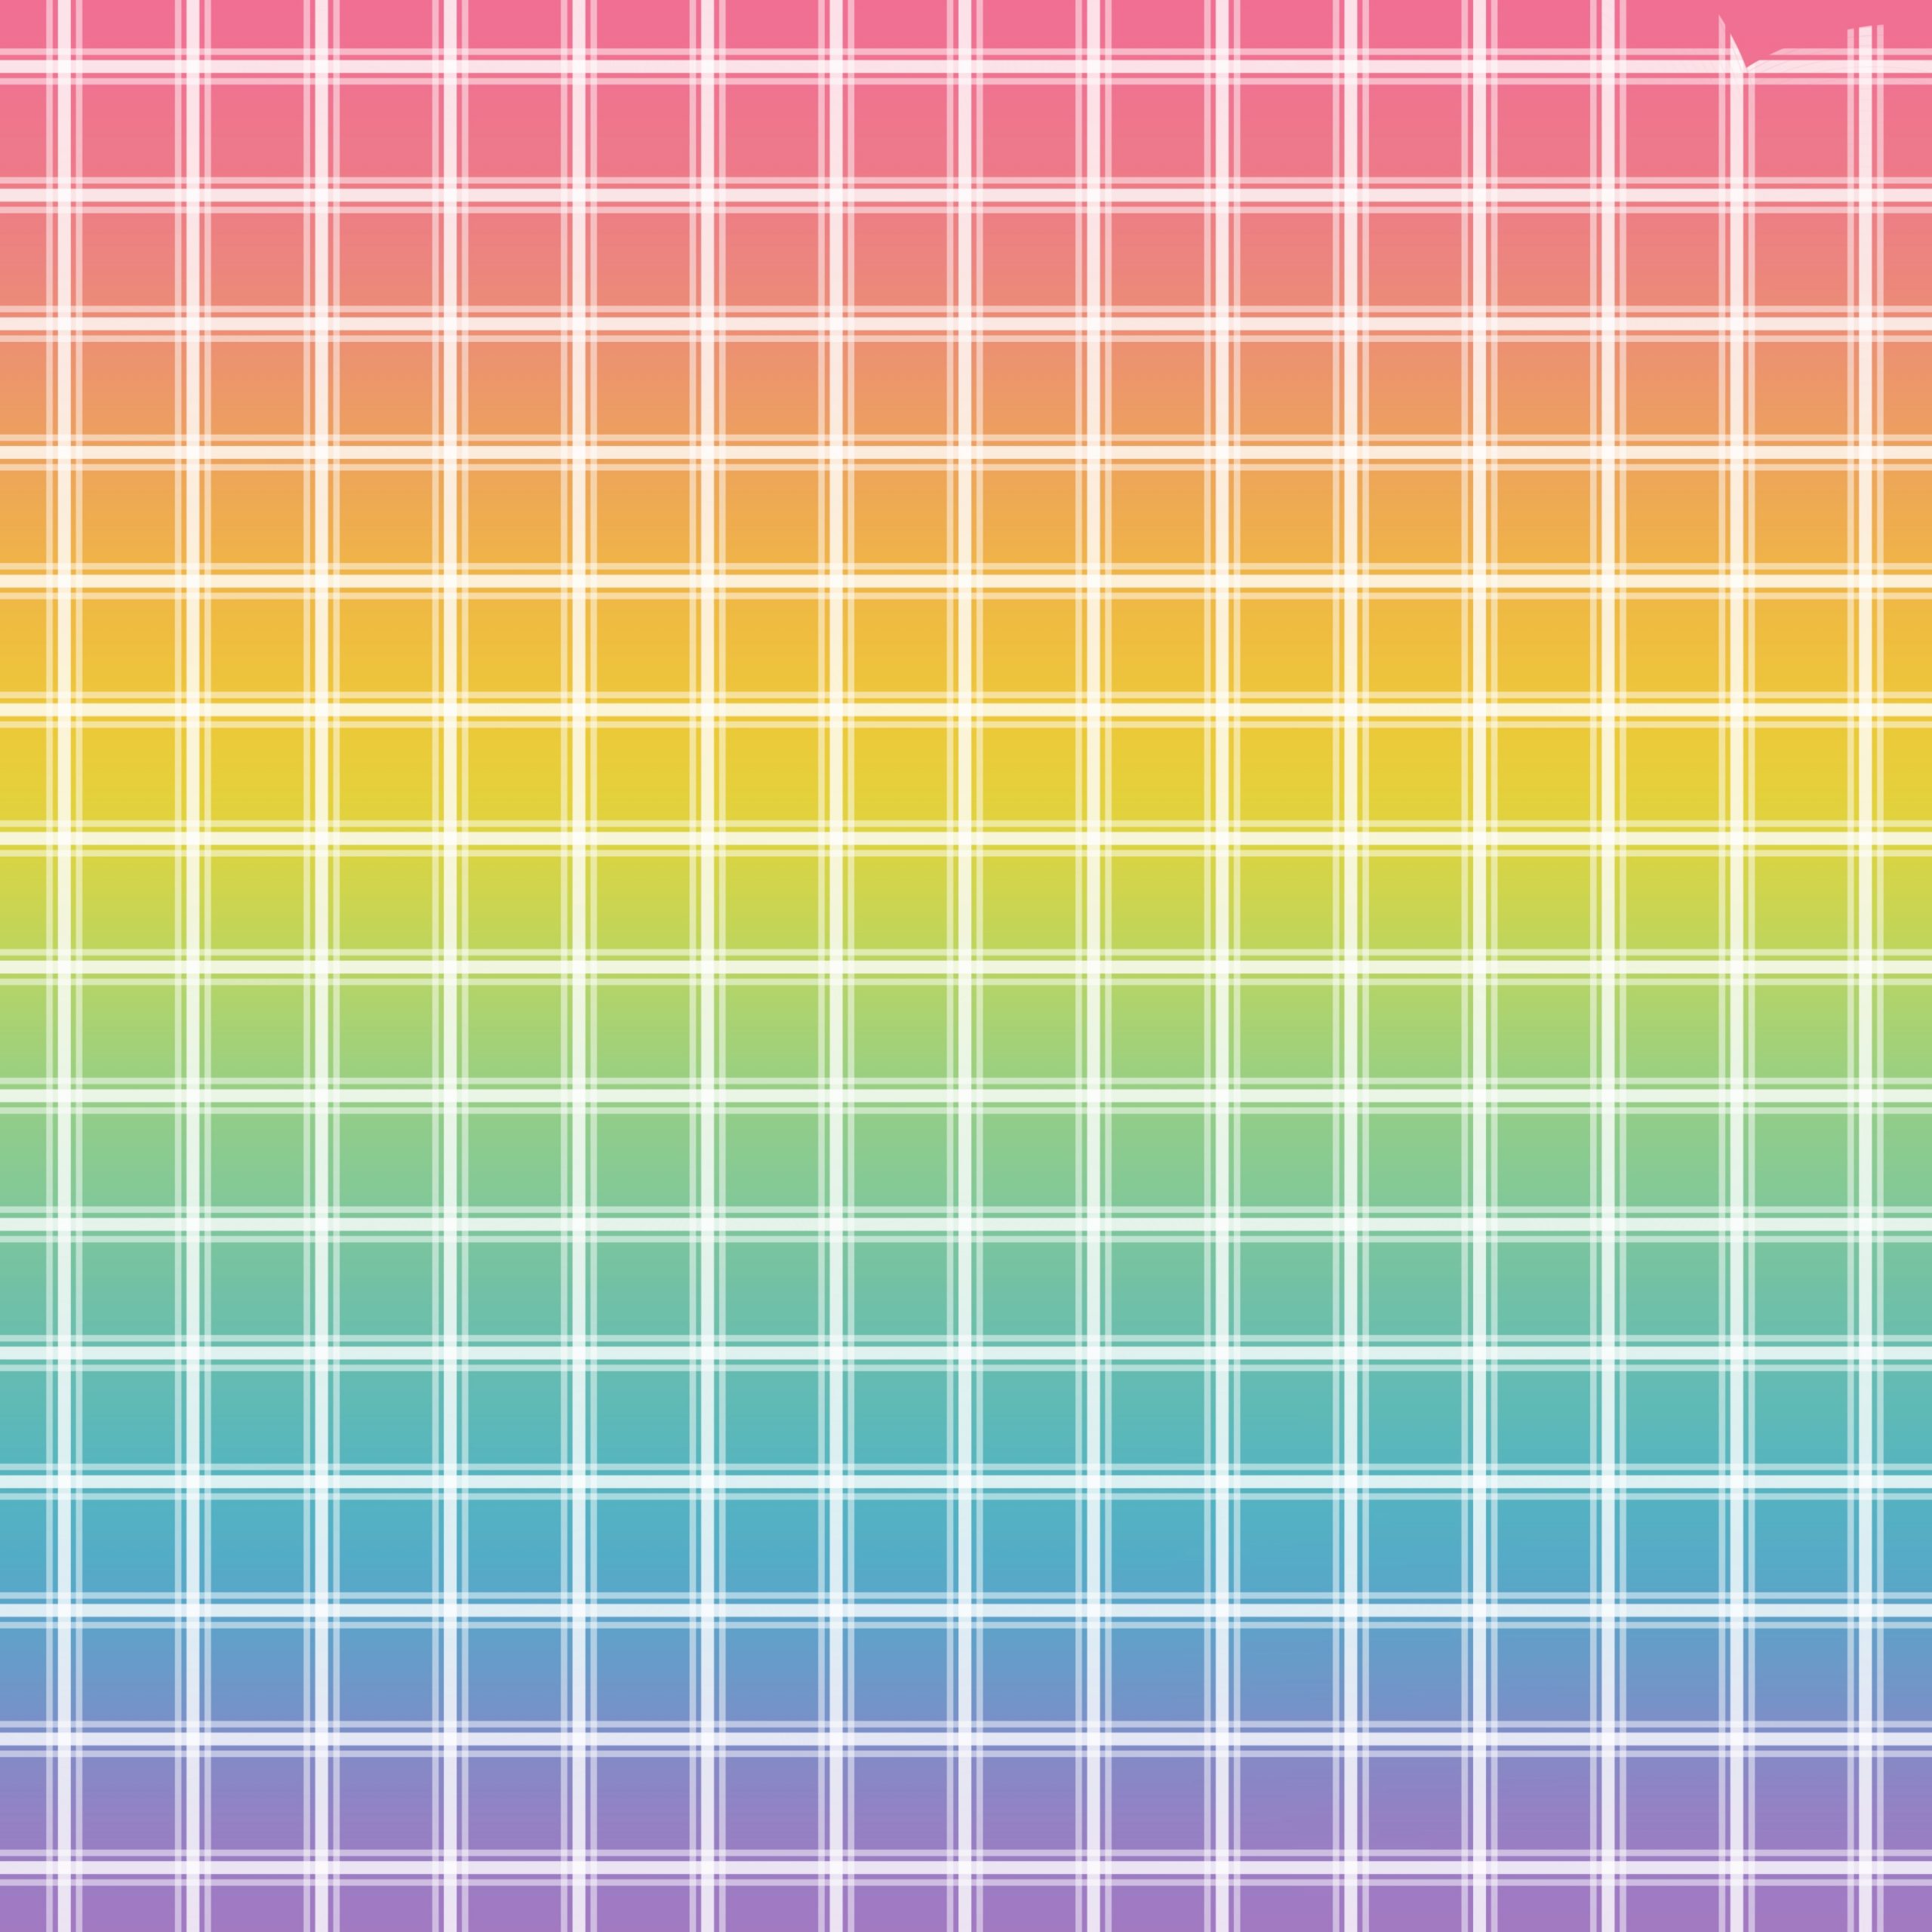 Papel digital para scrapbooking virtual de patrón de líneas horizontales y verticales sobre un fondo de colores arcoiris